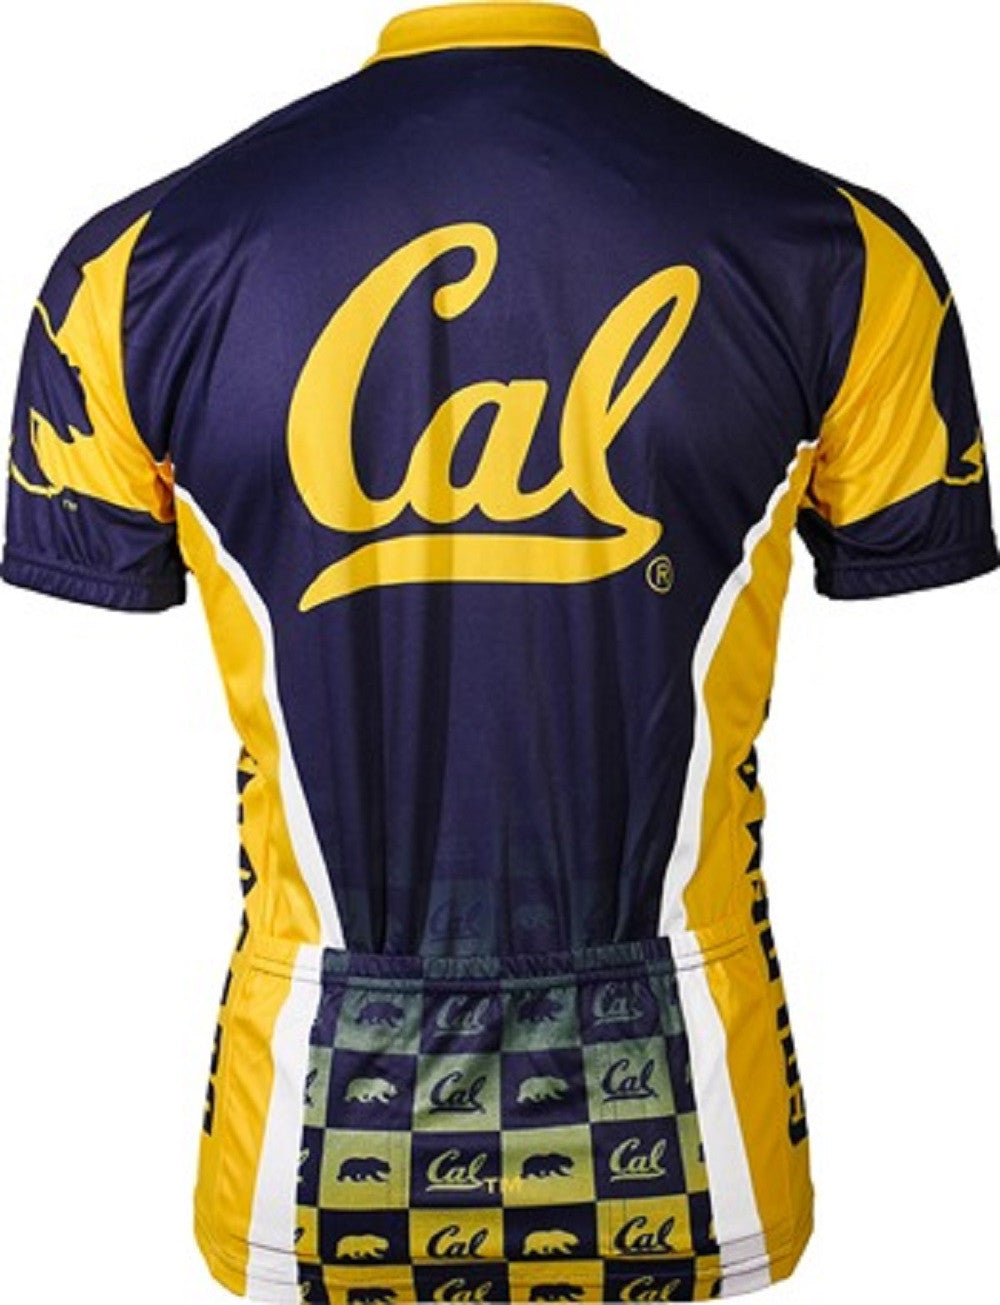 California Berkeley Golden Bears Men's Cycling Jersey (S, M, L, XL, 2XL, 3XL)